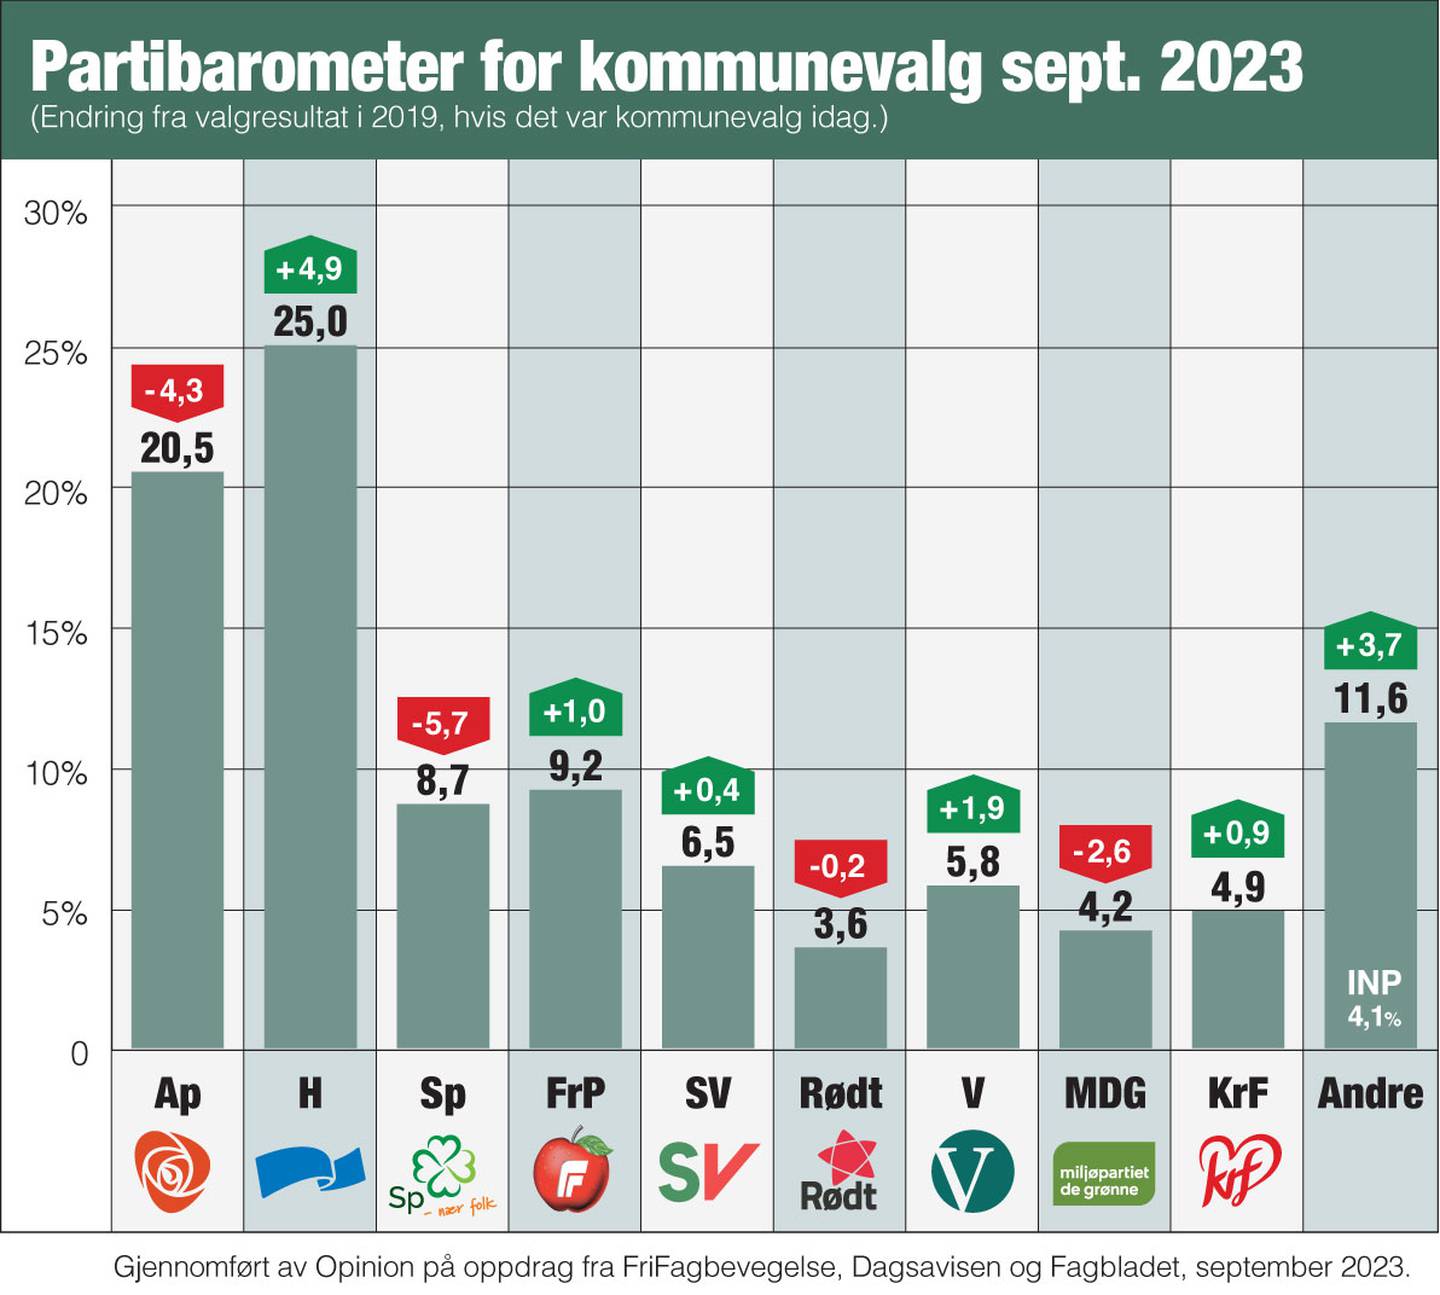 Partibarometer for kommunevalg, september 2023.